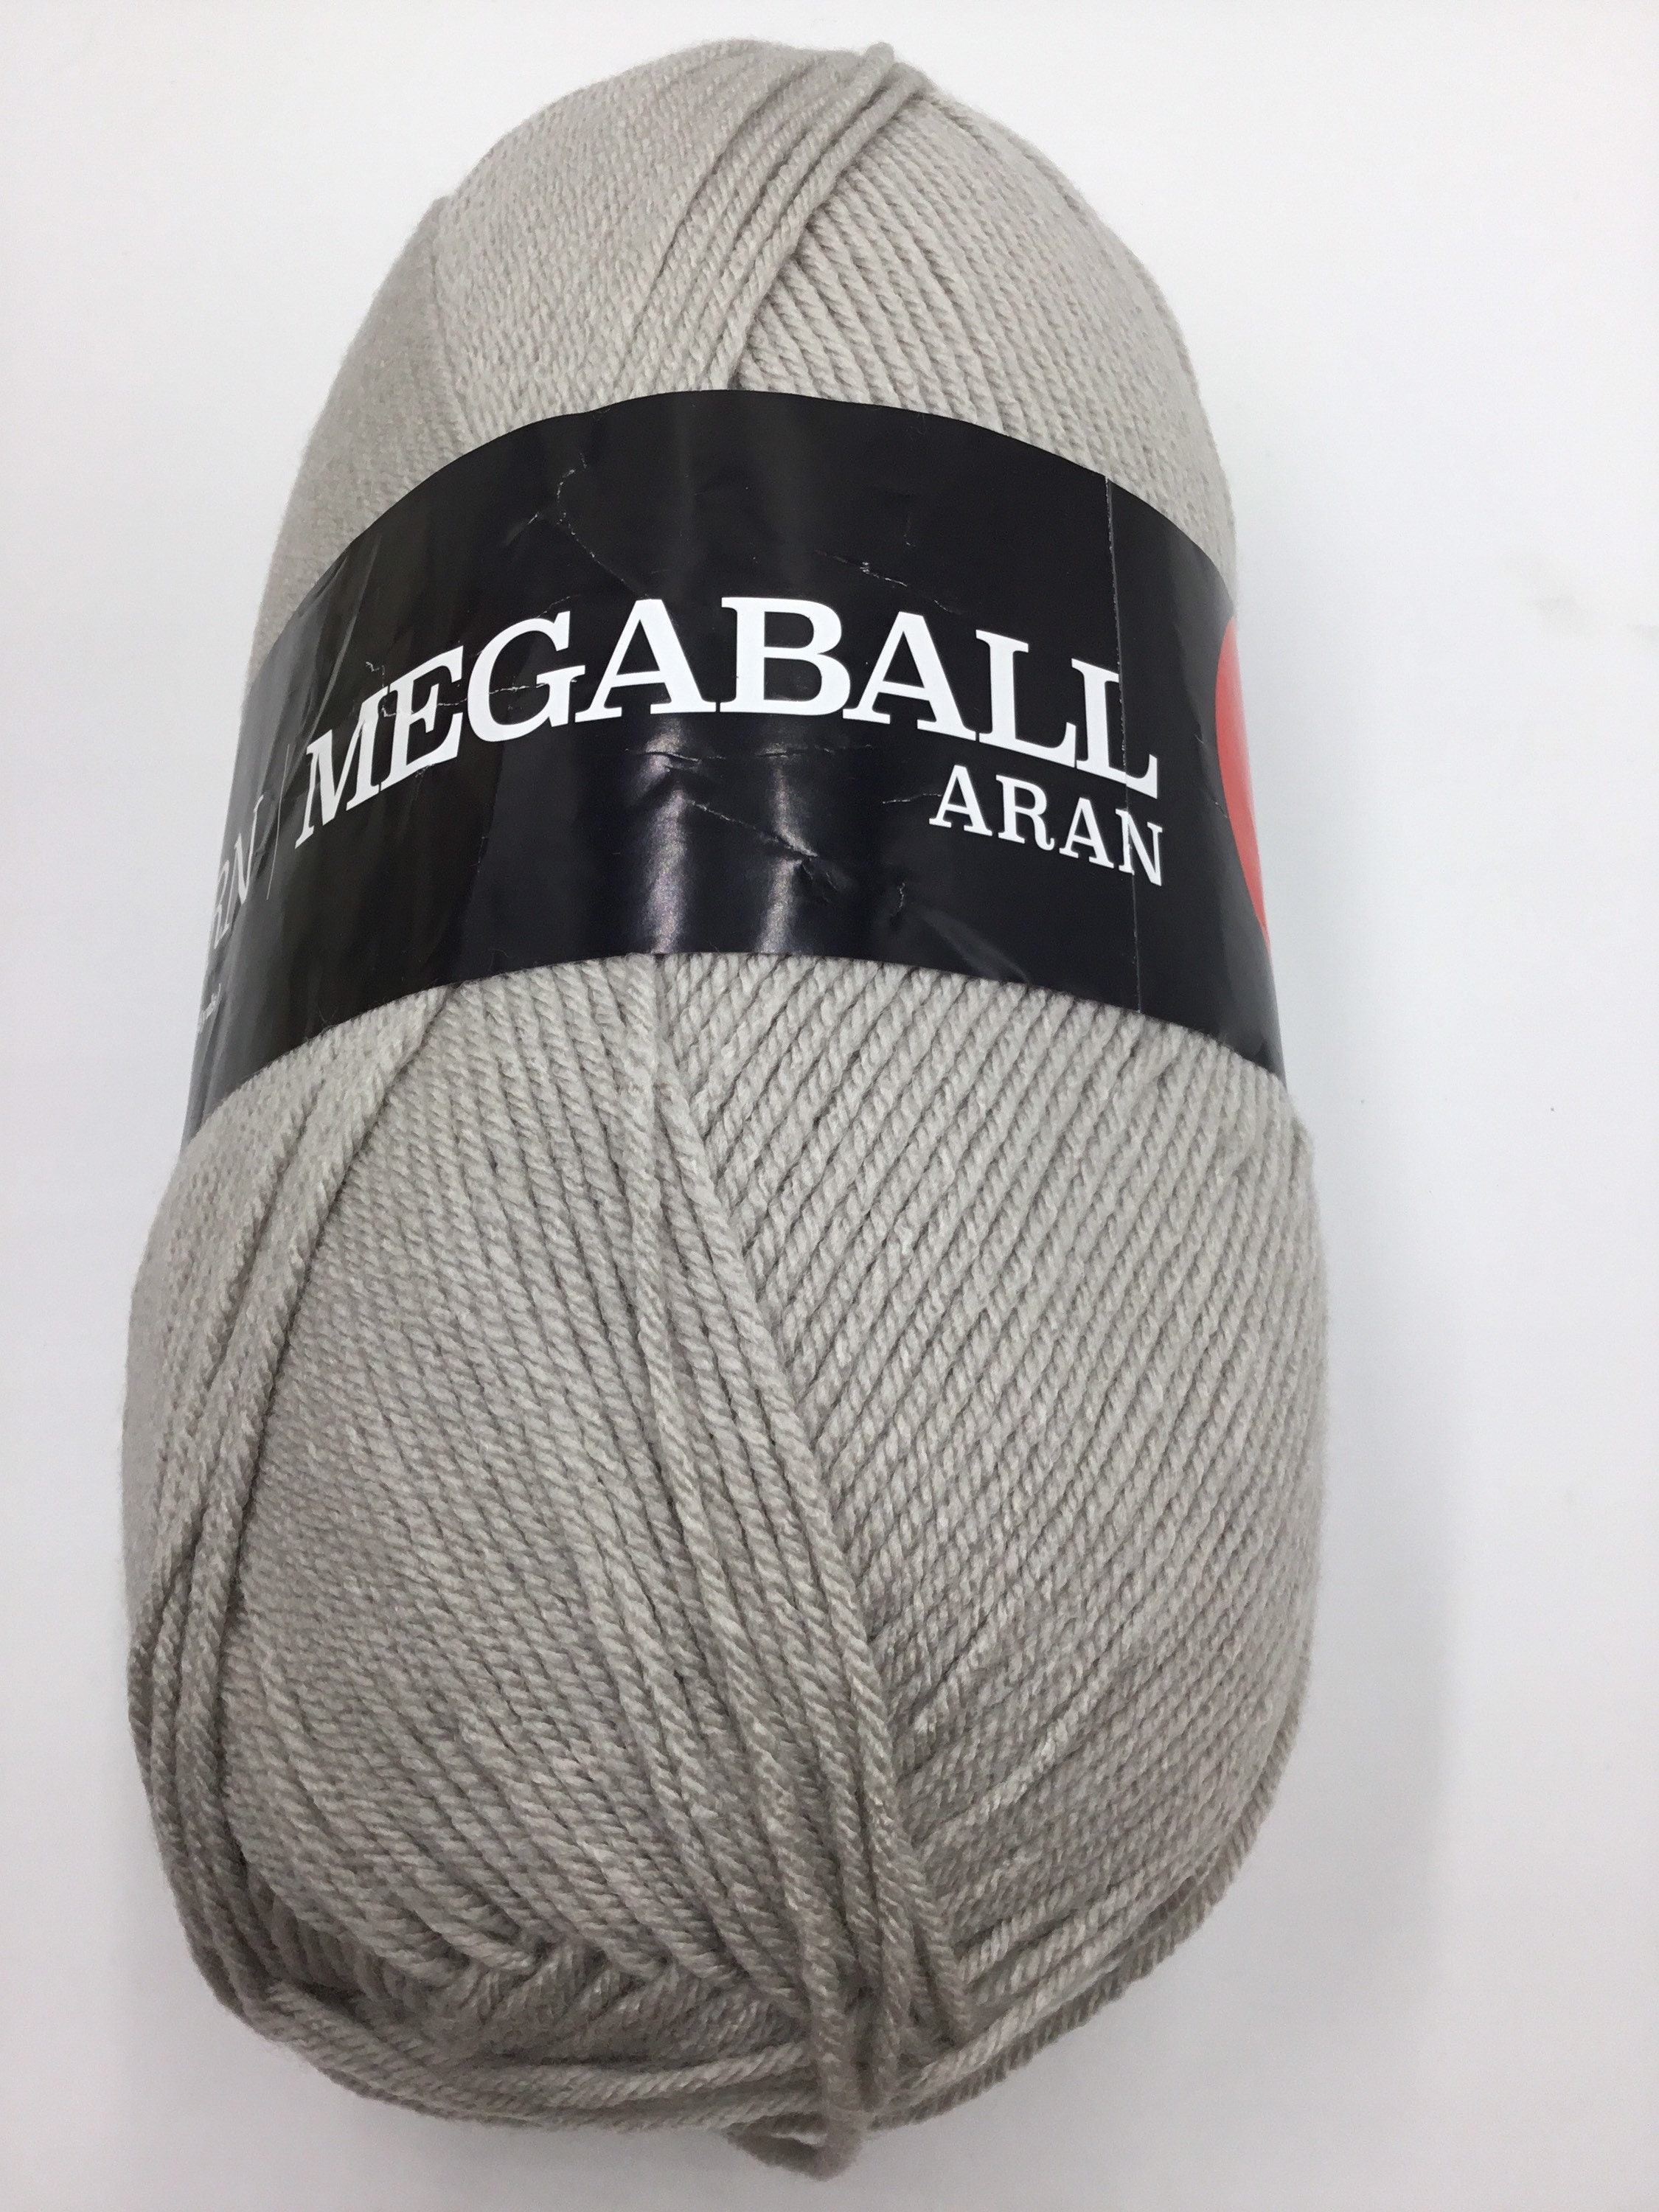 Mega Ball 400 g / 14.11 oz., Yarn